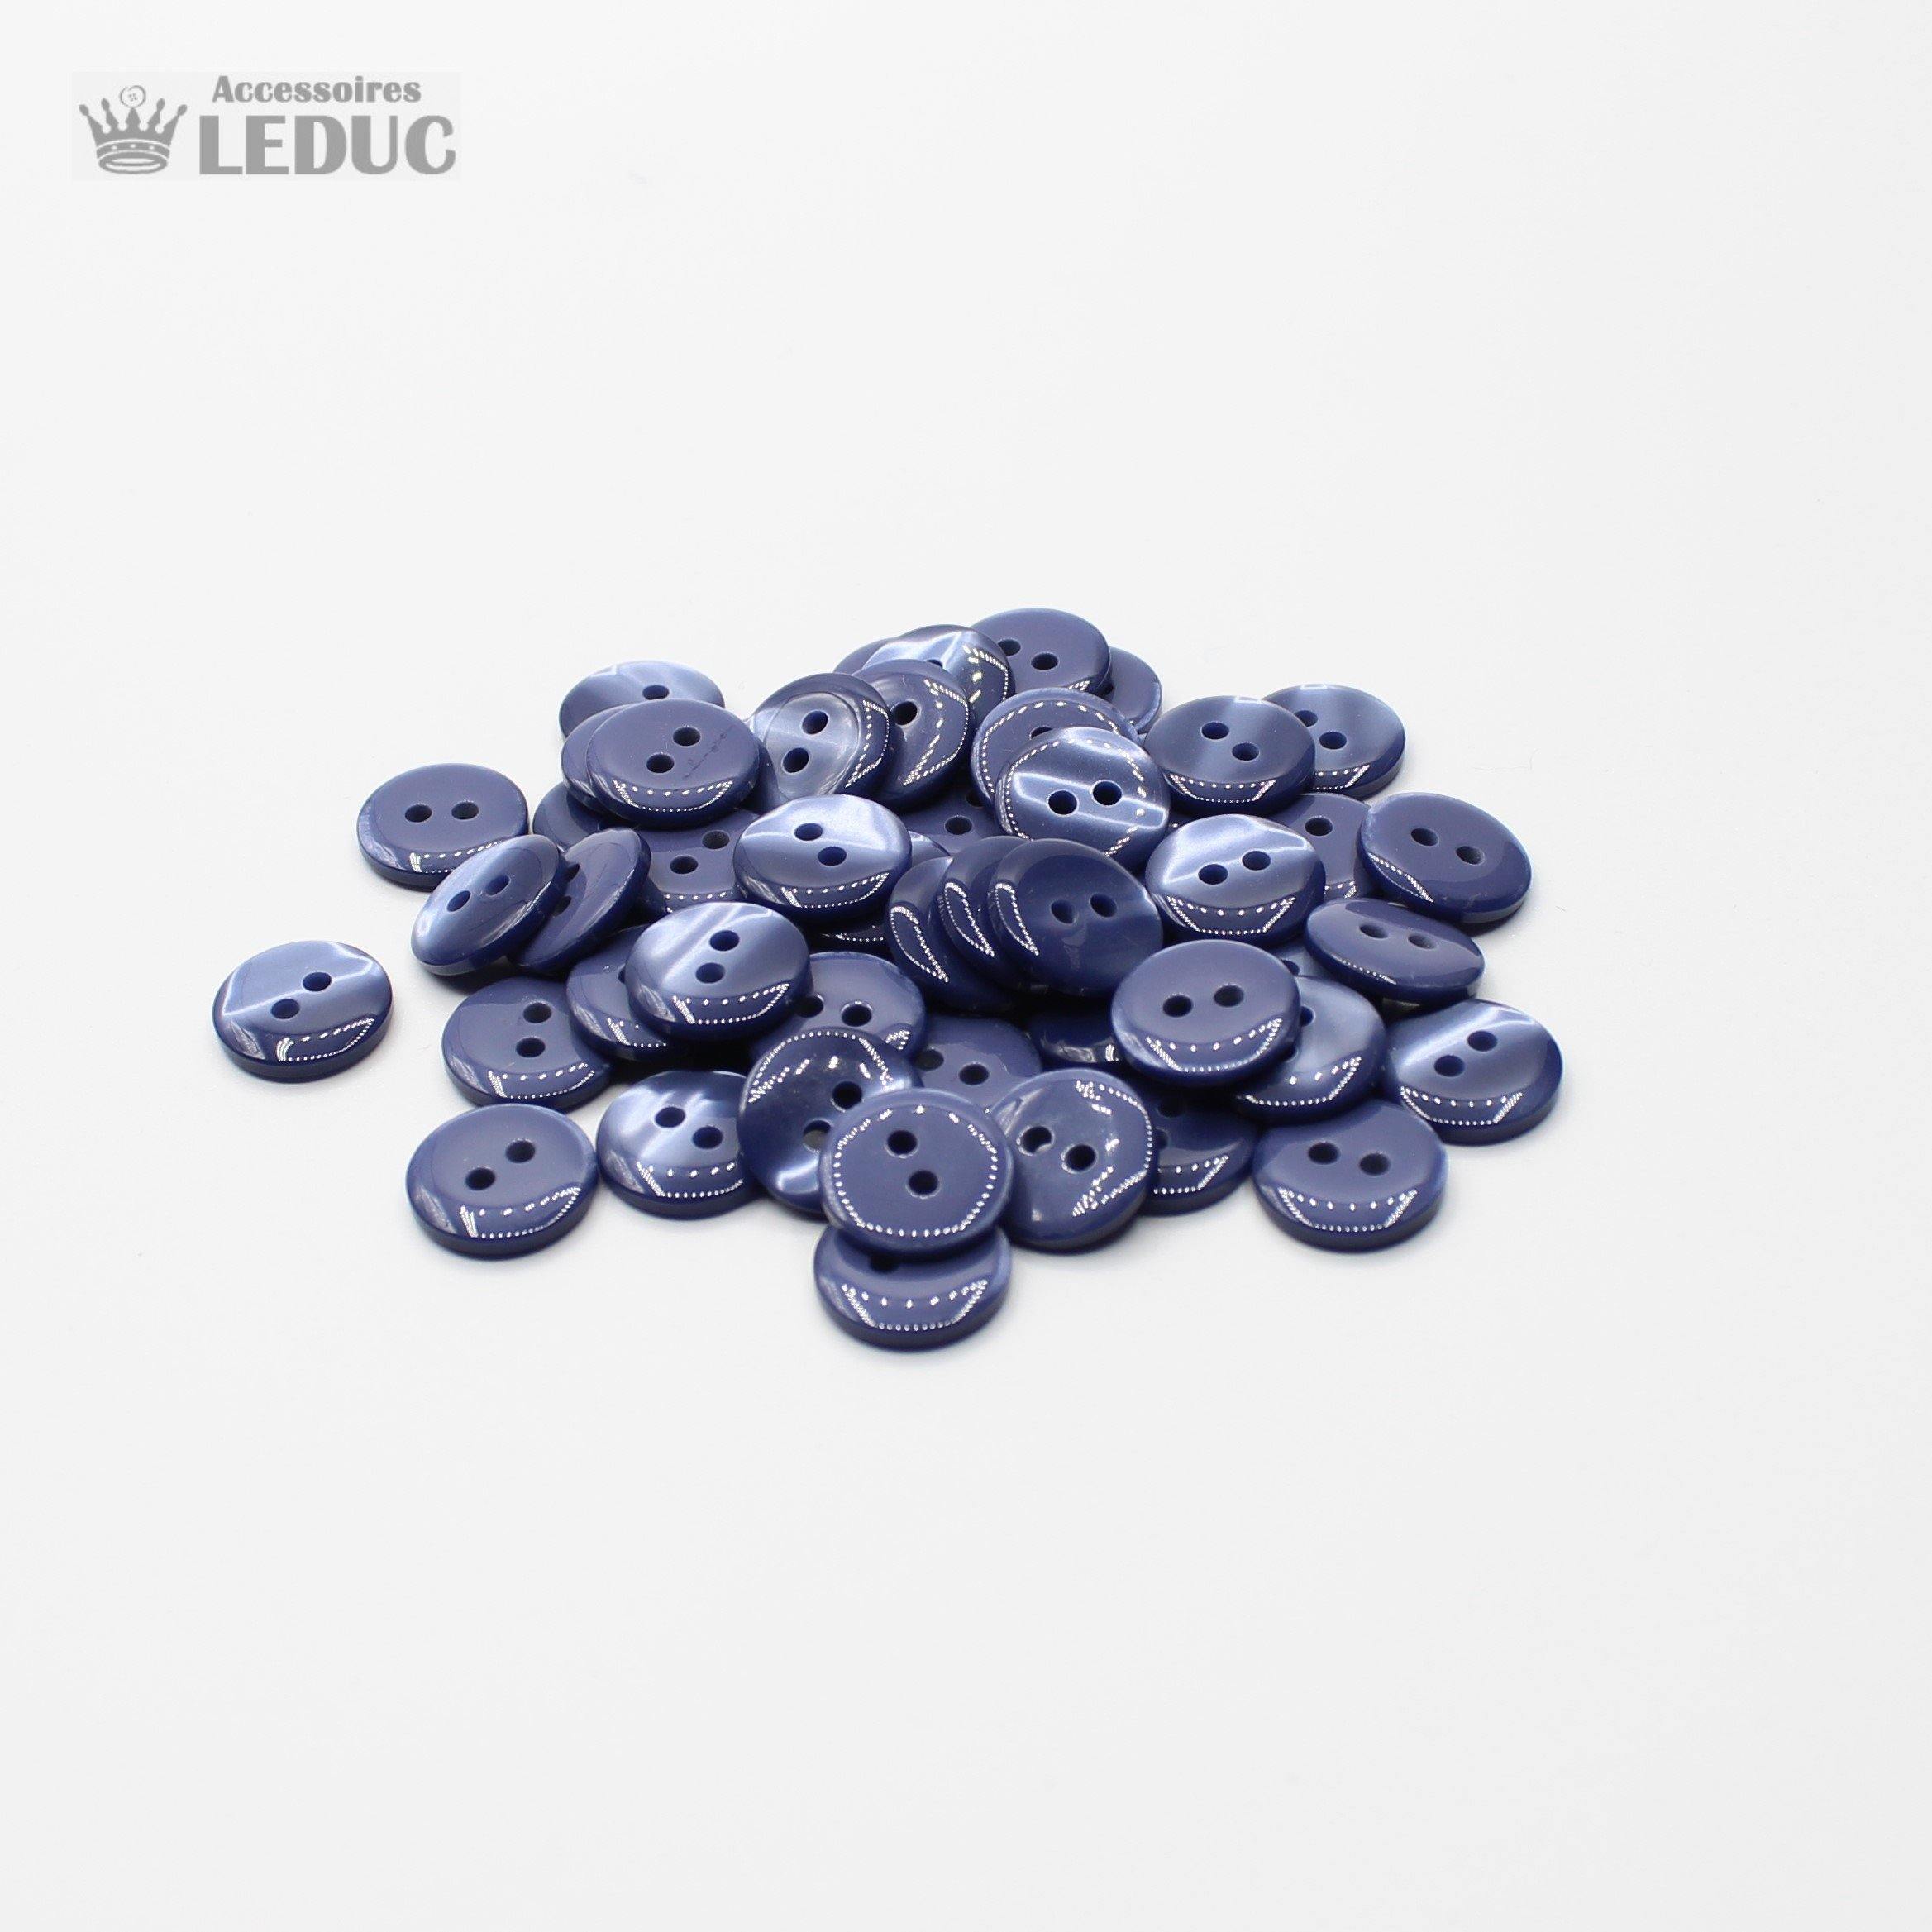 50 pieces - 2 Holes Polyester Button for Blouses 11mm (18") - (KP2 105 18") - ACCESSOIRES LEDUC